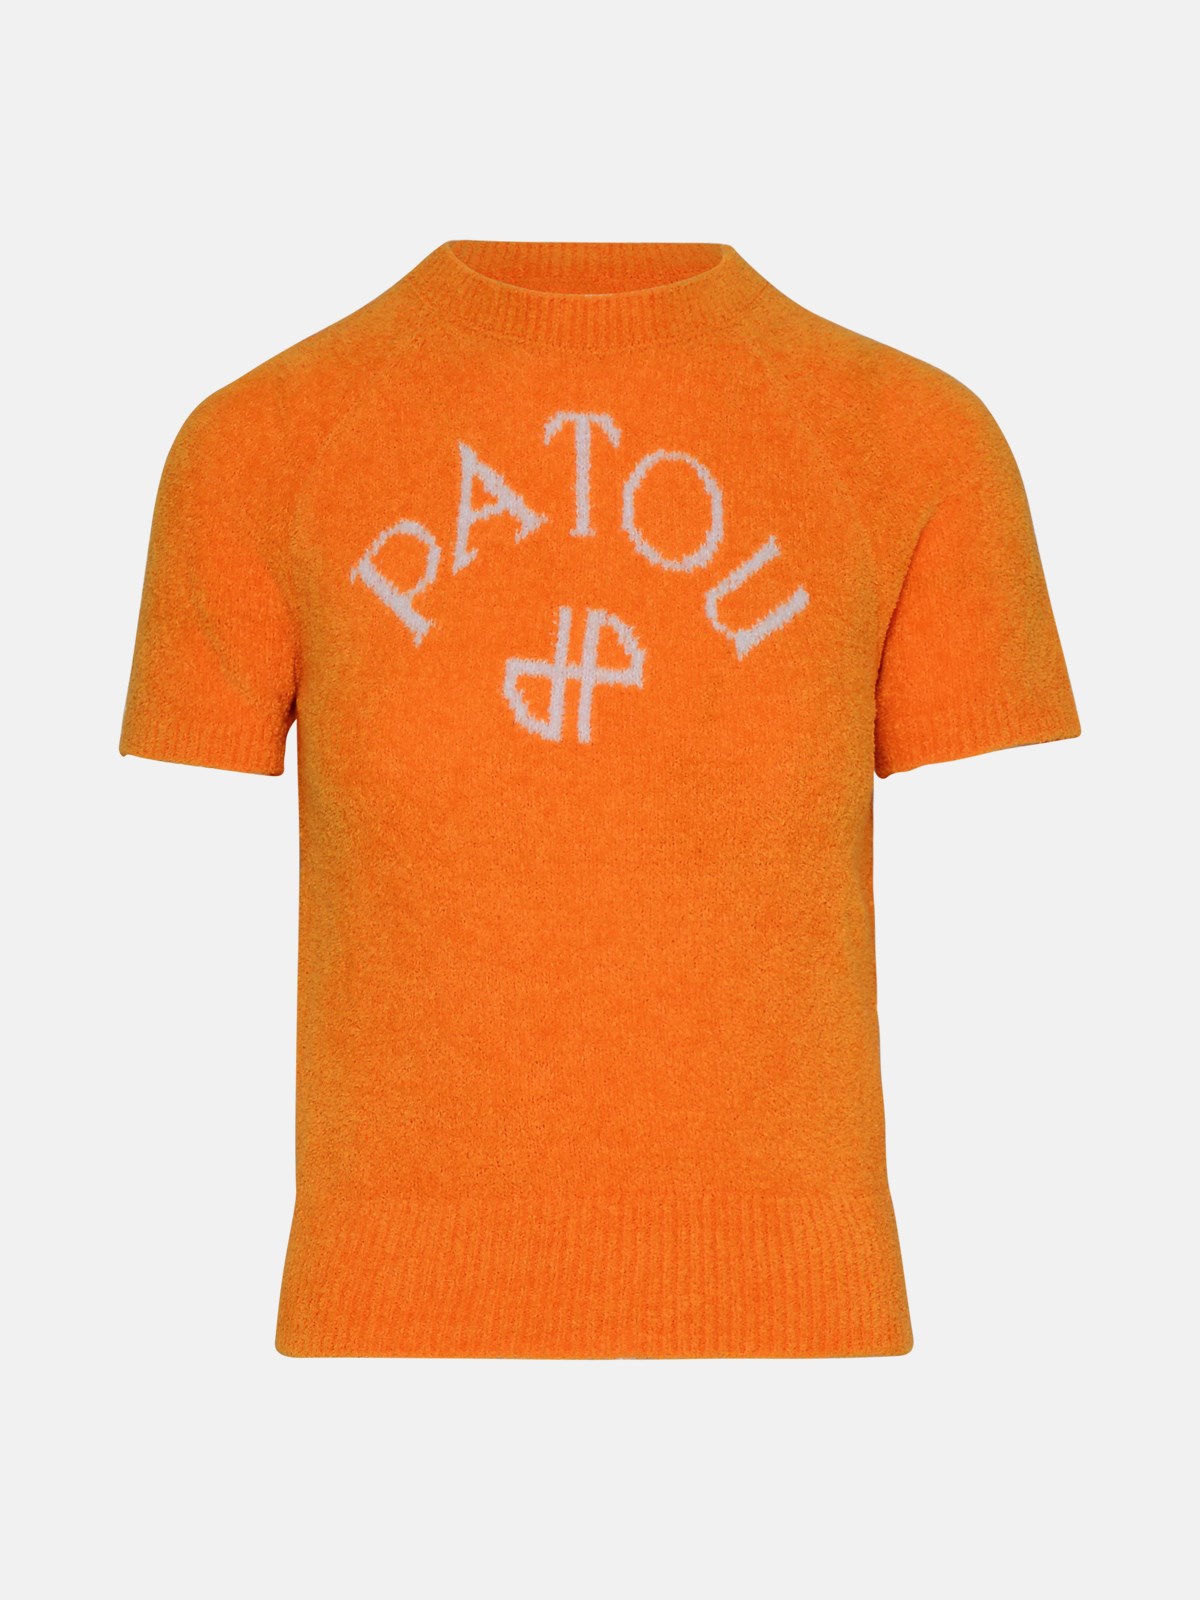 Patou Orange Cotton Blend Top